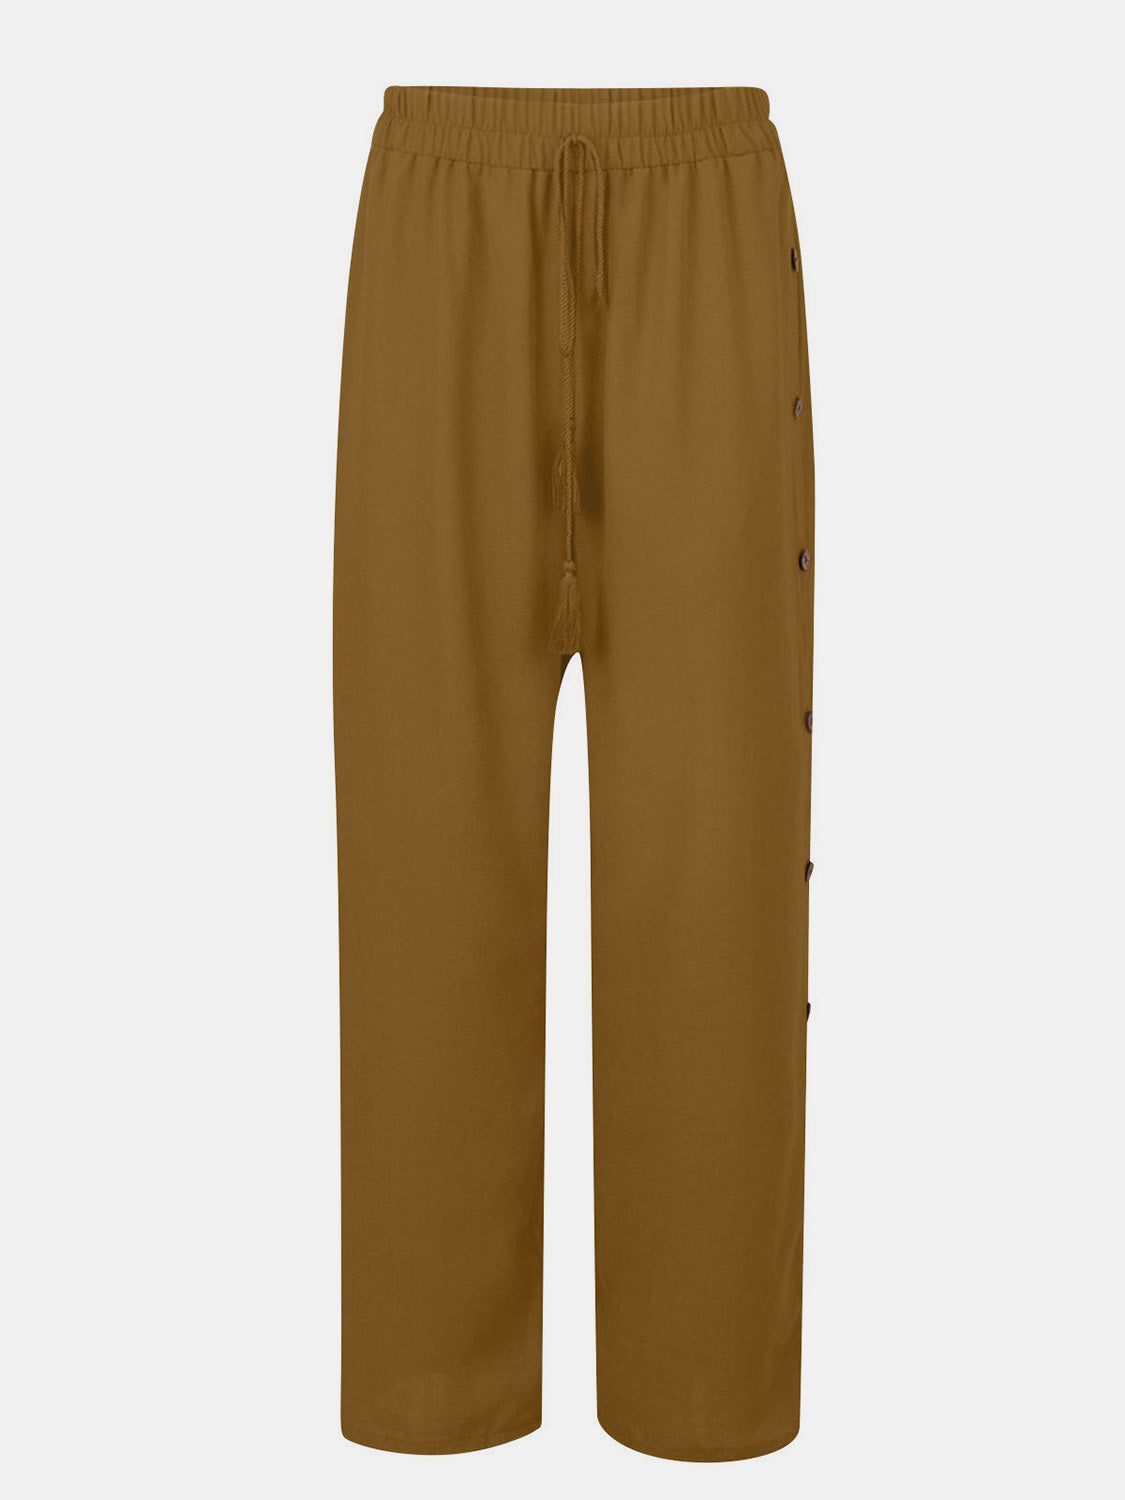 TEEK - Full Size Tassel Wide Leg Pants PANTS TEEK Trend Camel S 